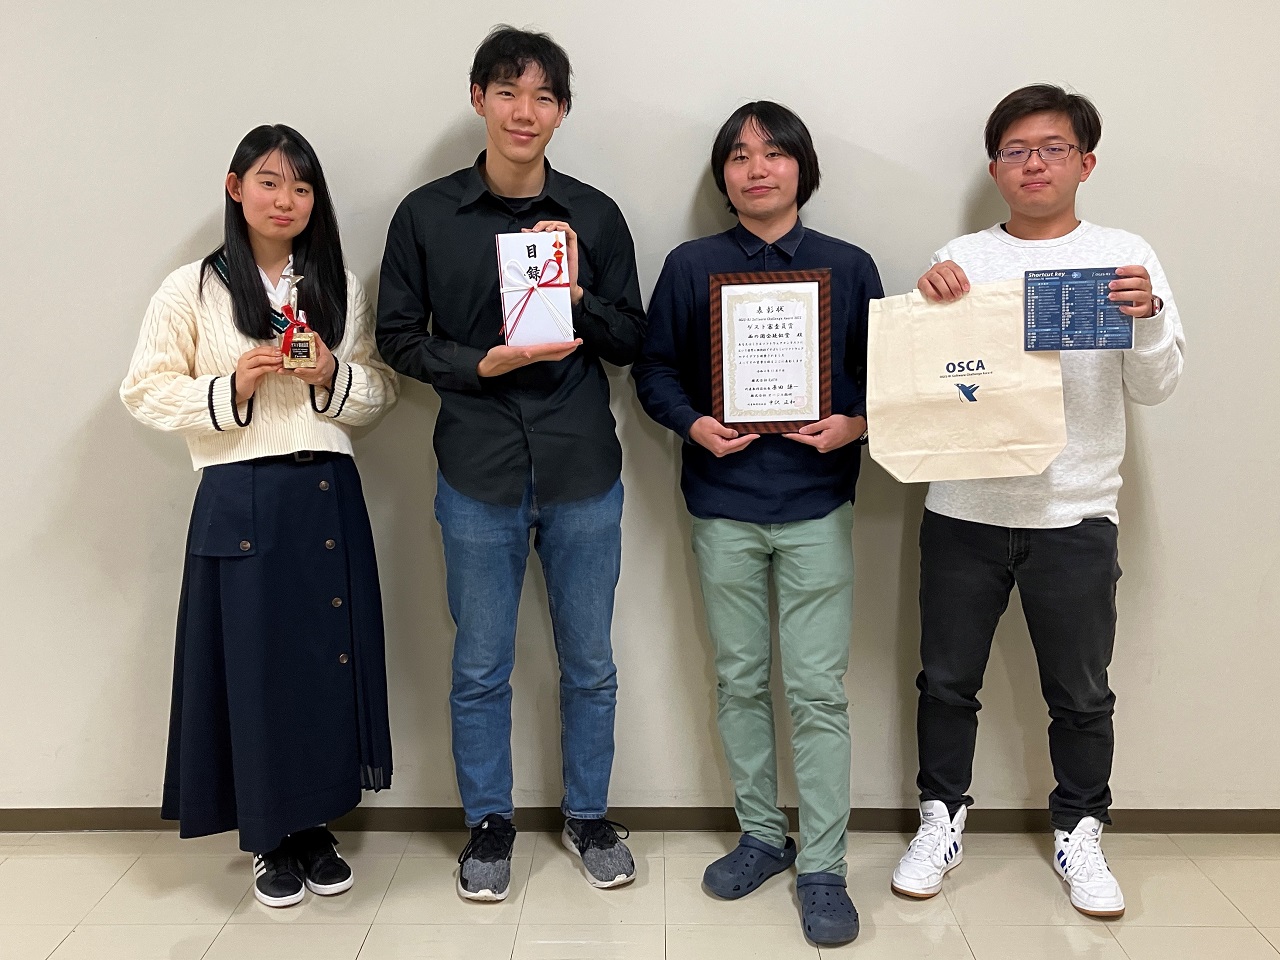 ネットワークデザイン学科の学生がオージス総研のコンテストでゲスト審査員賞を獲得